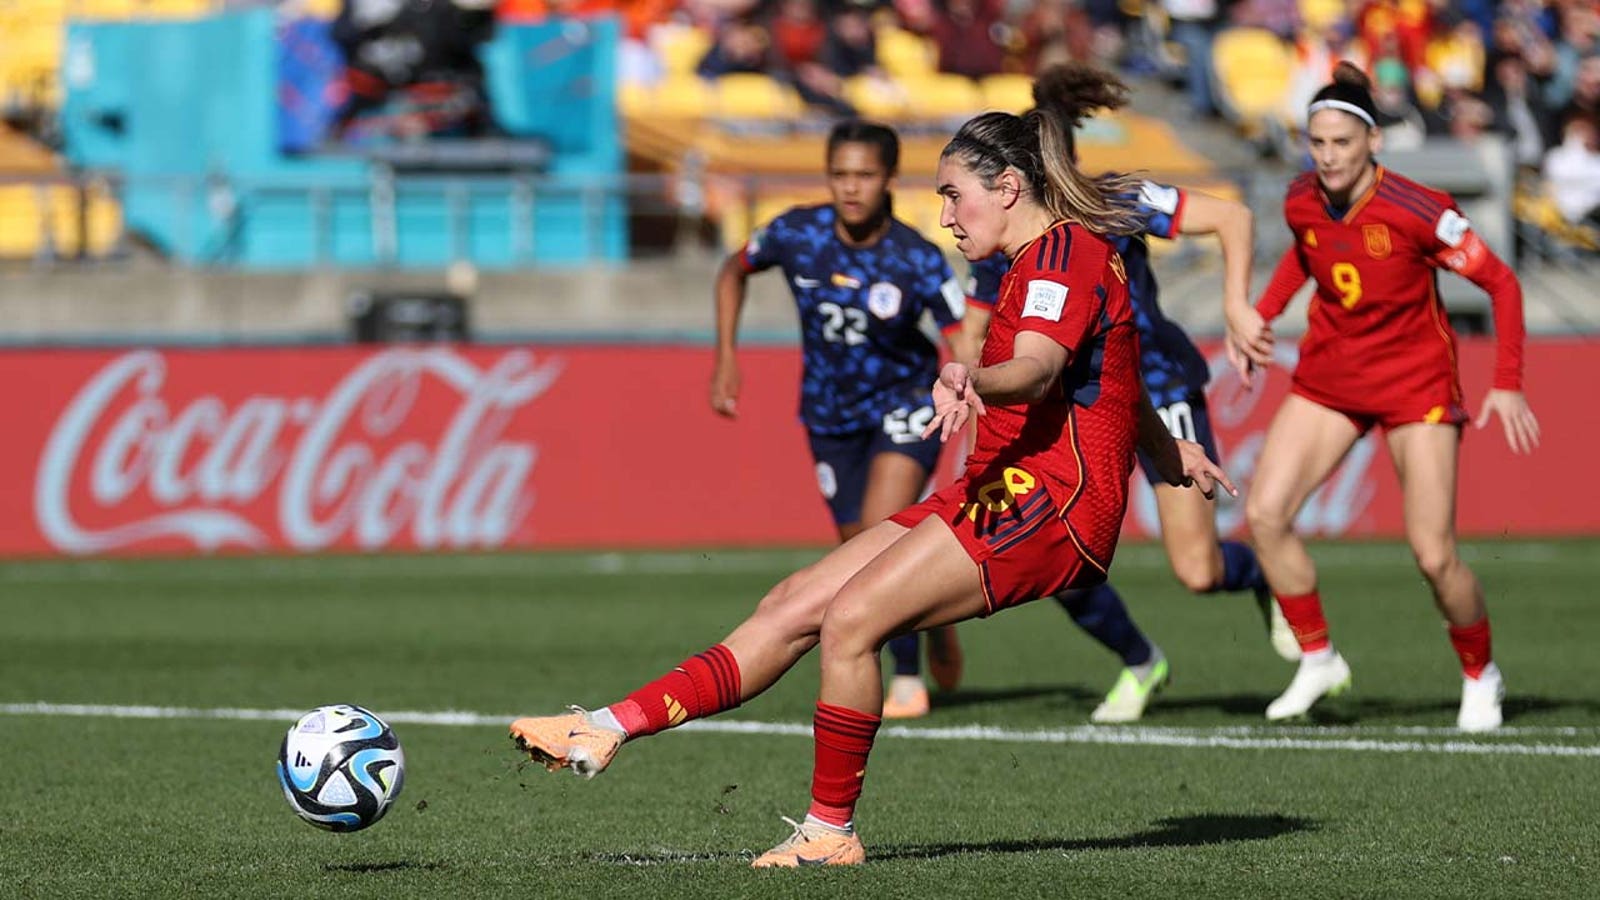 La española Maria Francesca Caldente Oliver marca un gol contra Holanda en el minuto 81